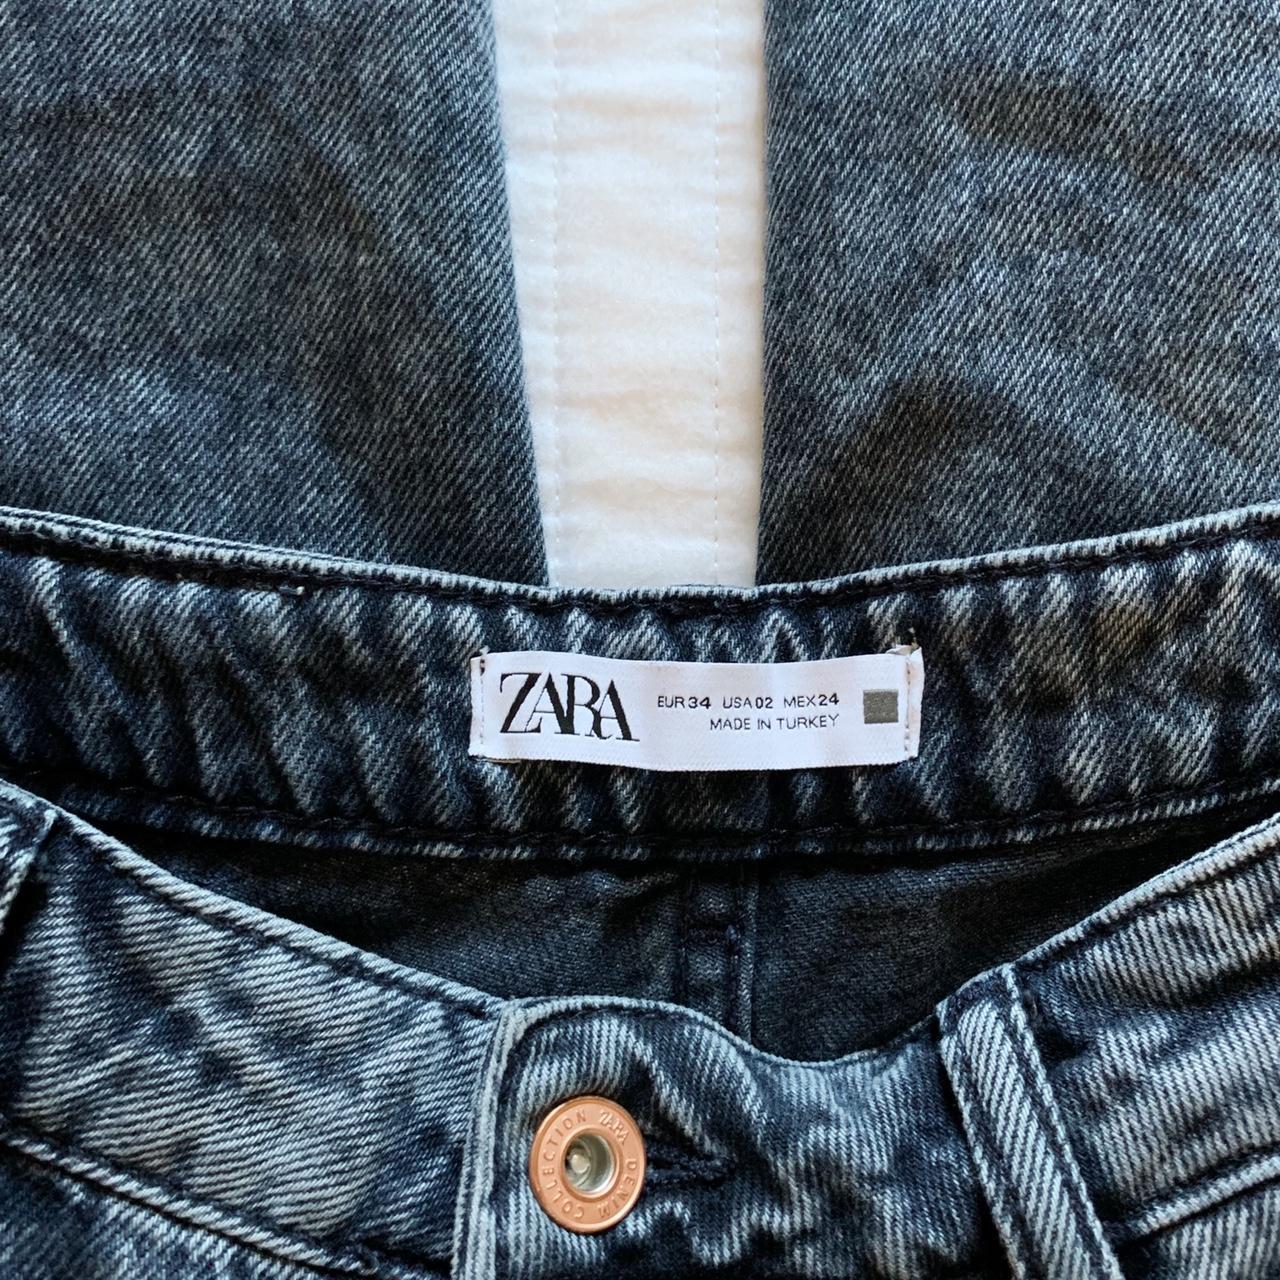 Zara high waisted acid wash jeans | size 2 | fits a... - Depop